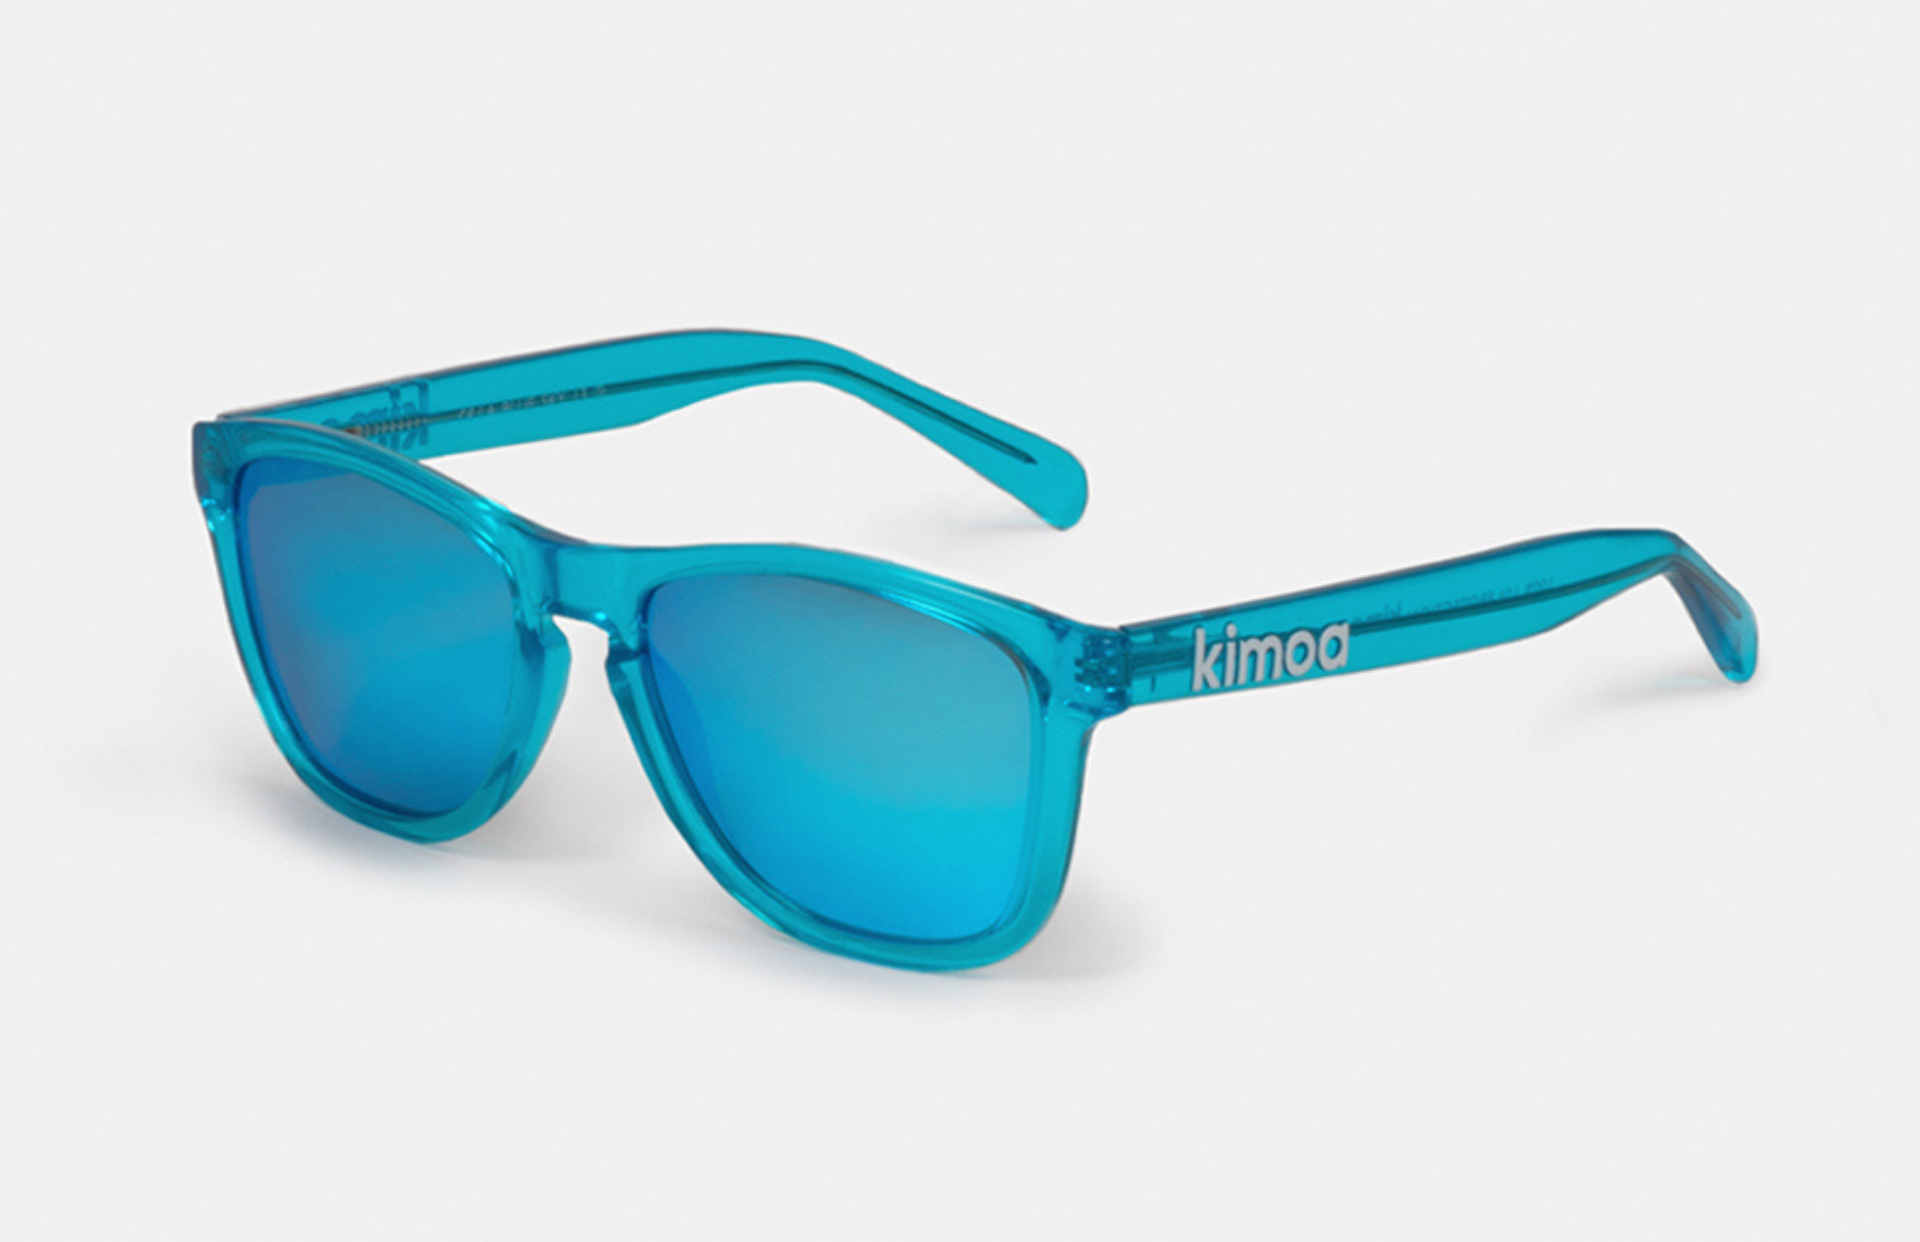 Sunglasses LA Kimoa Blue SKI